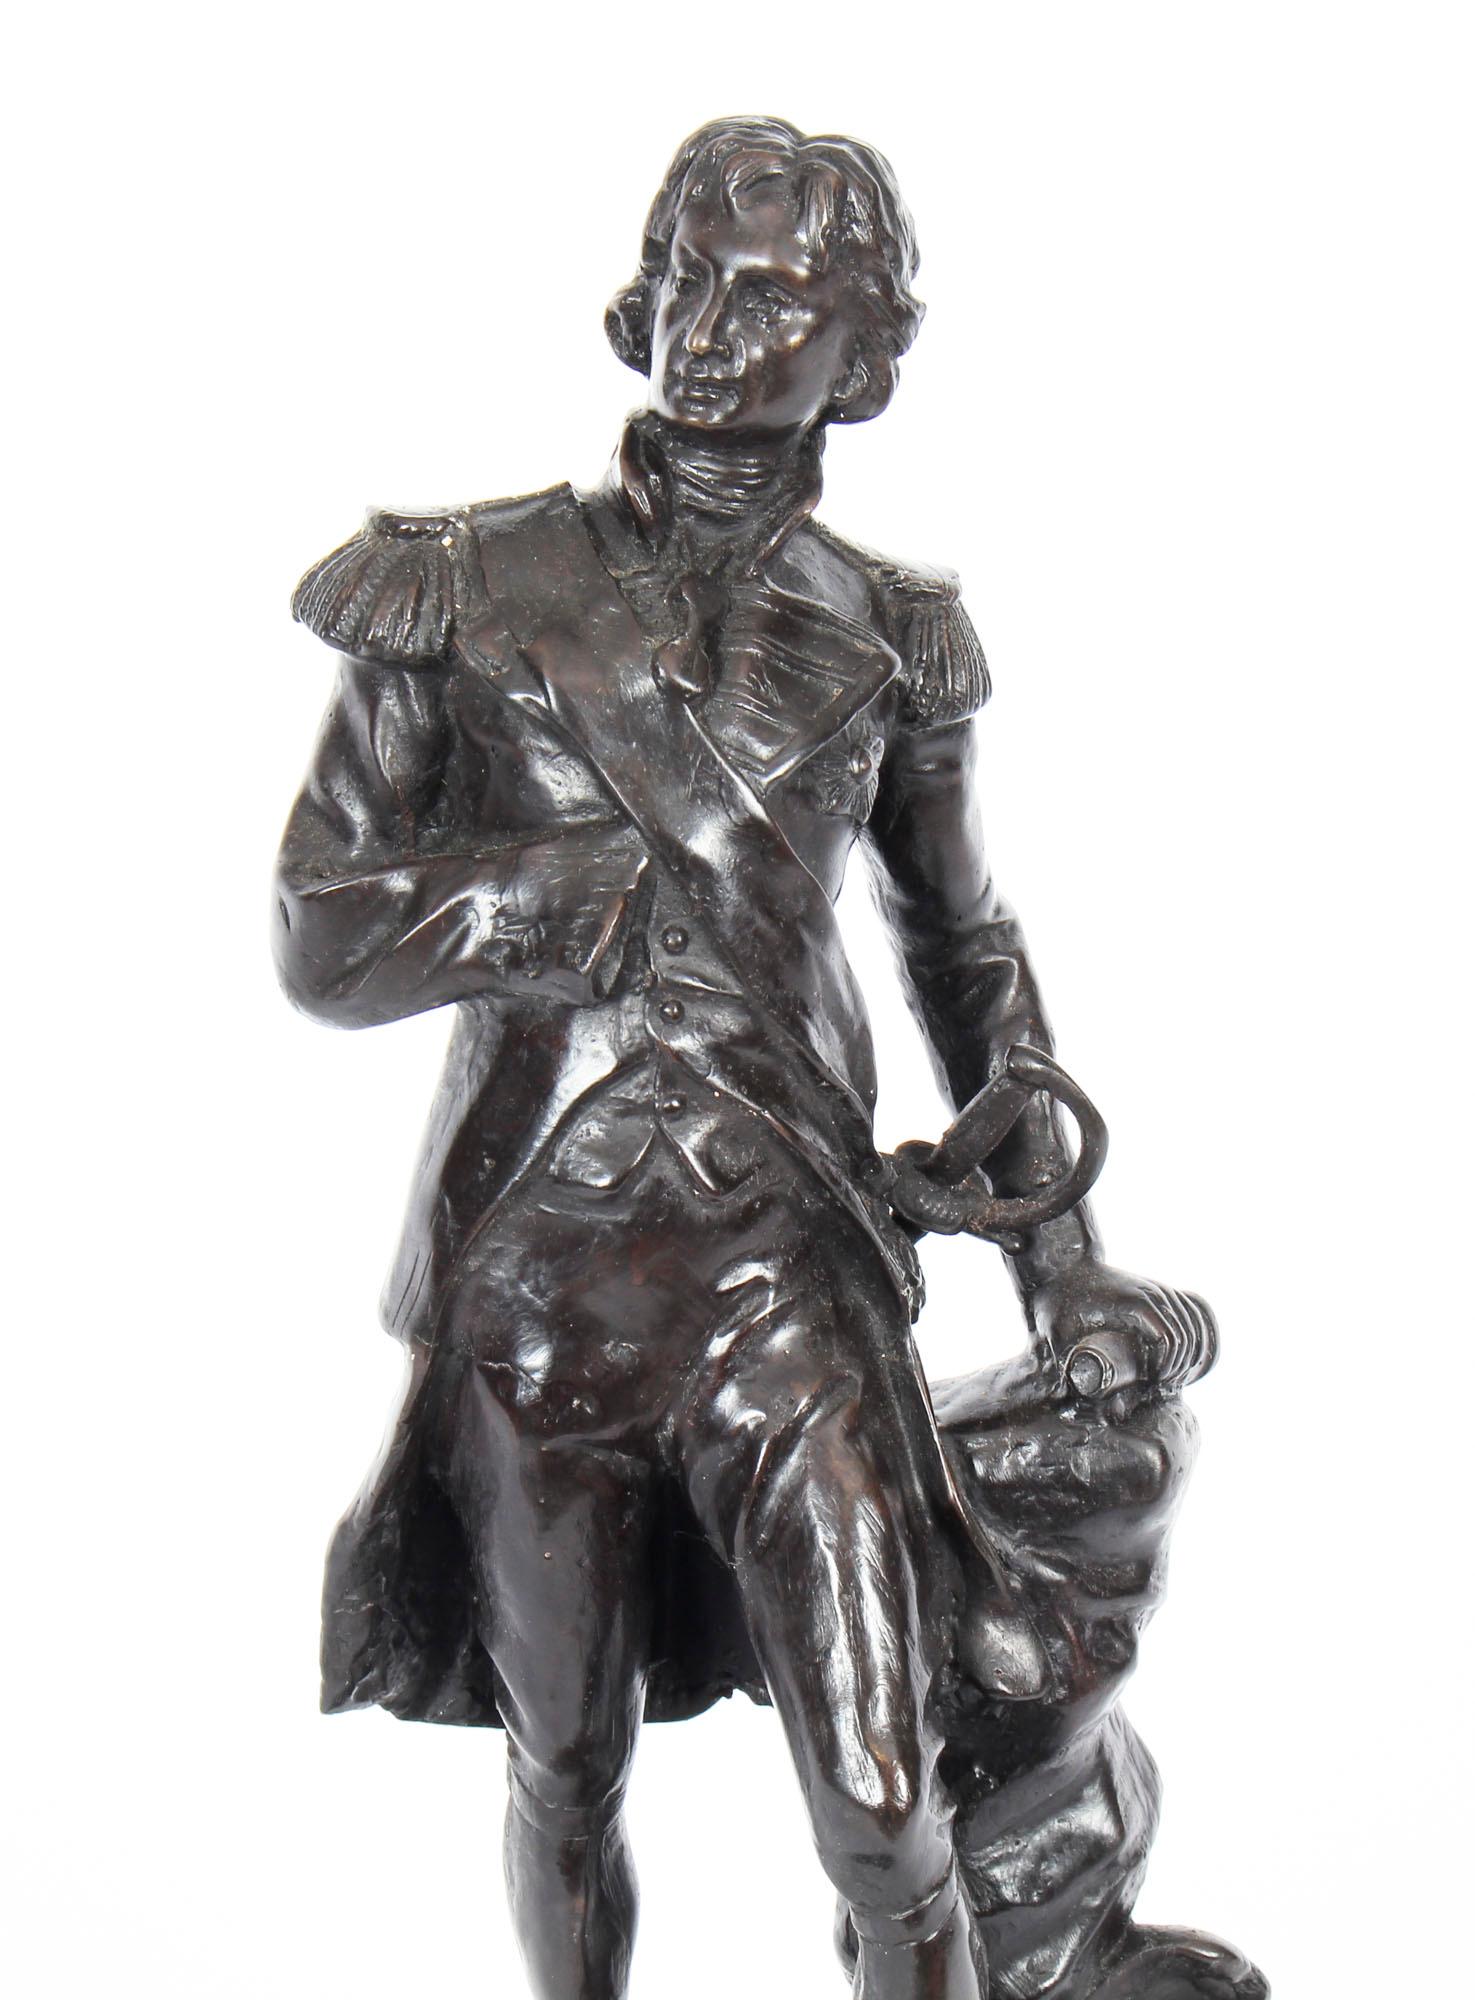 Une étonnante sculpture en bronze de l'un des plus grands héros militaires britanniques de tous les temps,  datant de la fin du 20e siècle.

Le 21 octobre 1805, la flotte franco-espagnole sort du port et la flotte de l'amiral Horatio Nelson l'engage